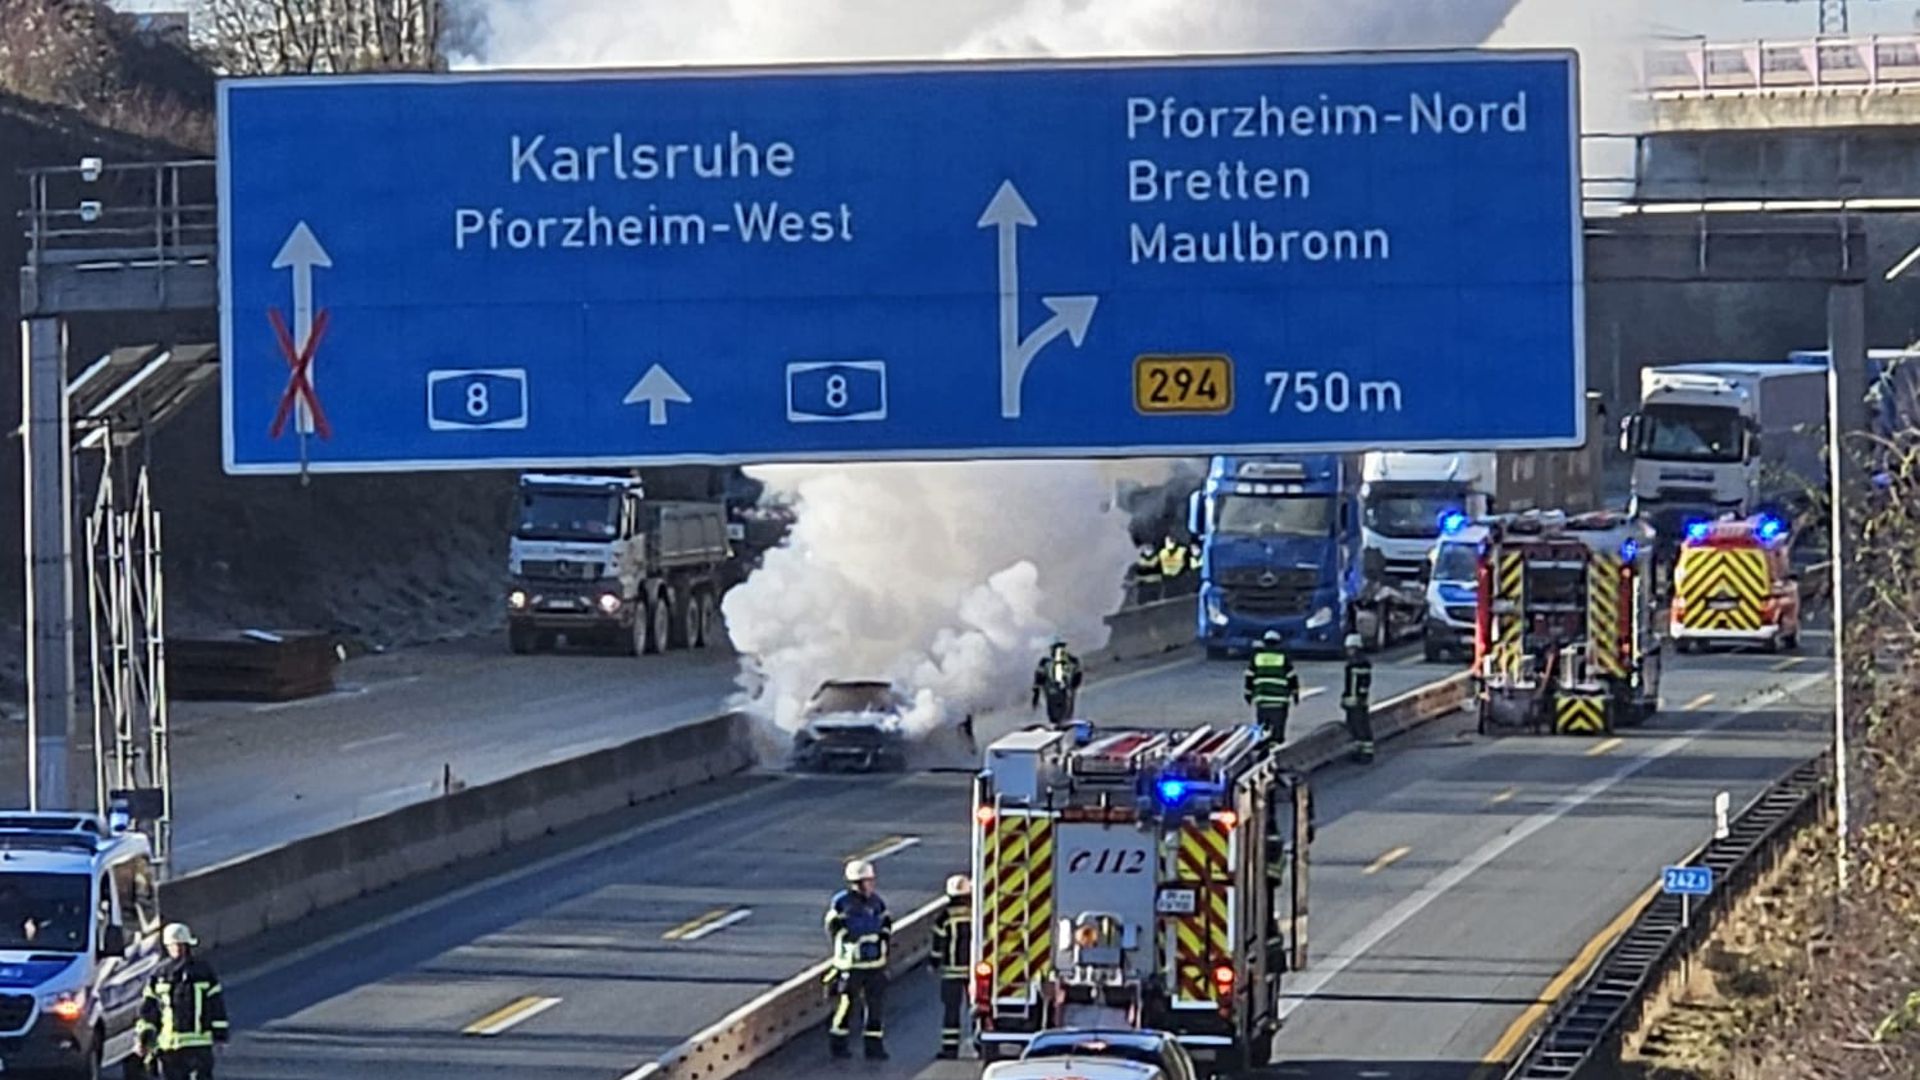 Der Rauch des brennenden Fahrzeugs ist weithin sichtbar.